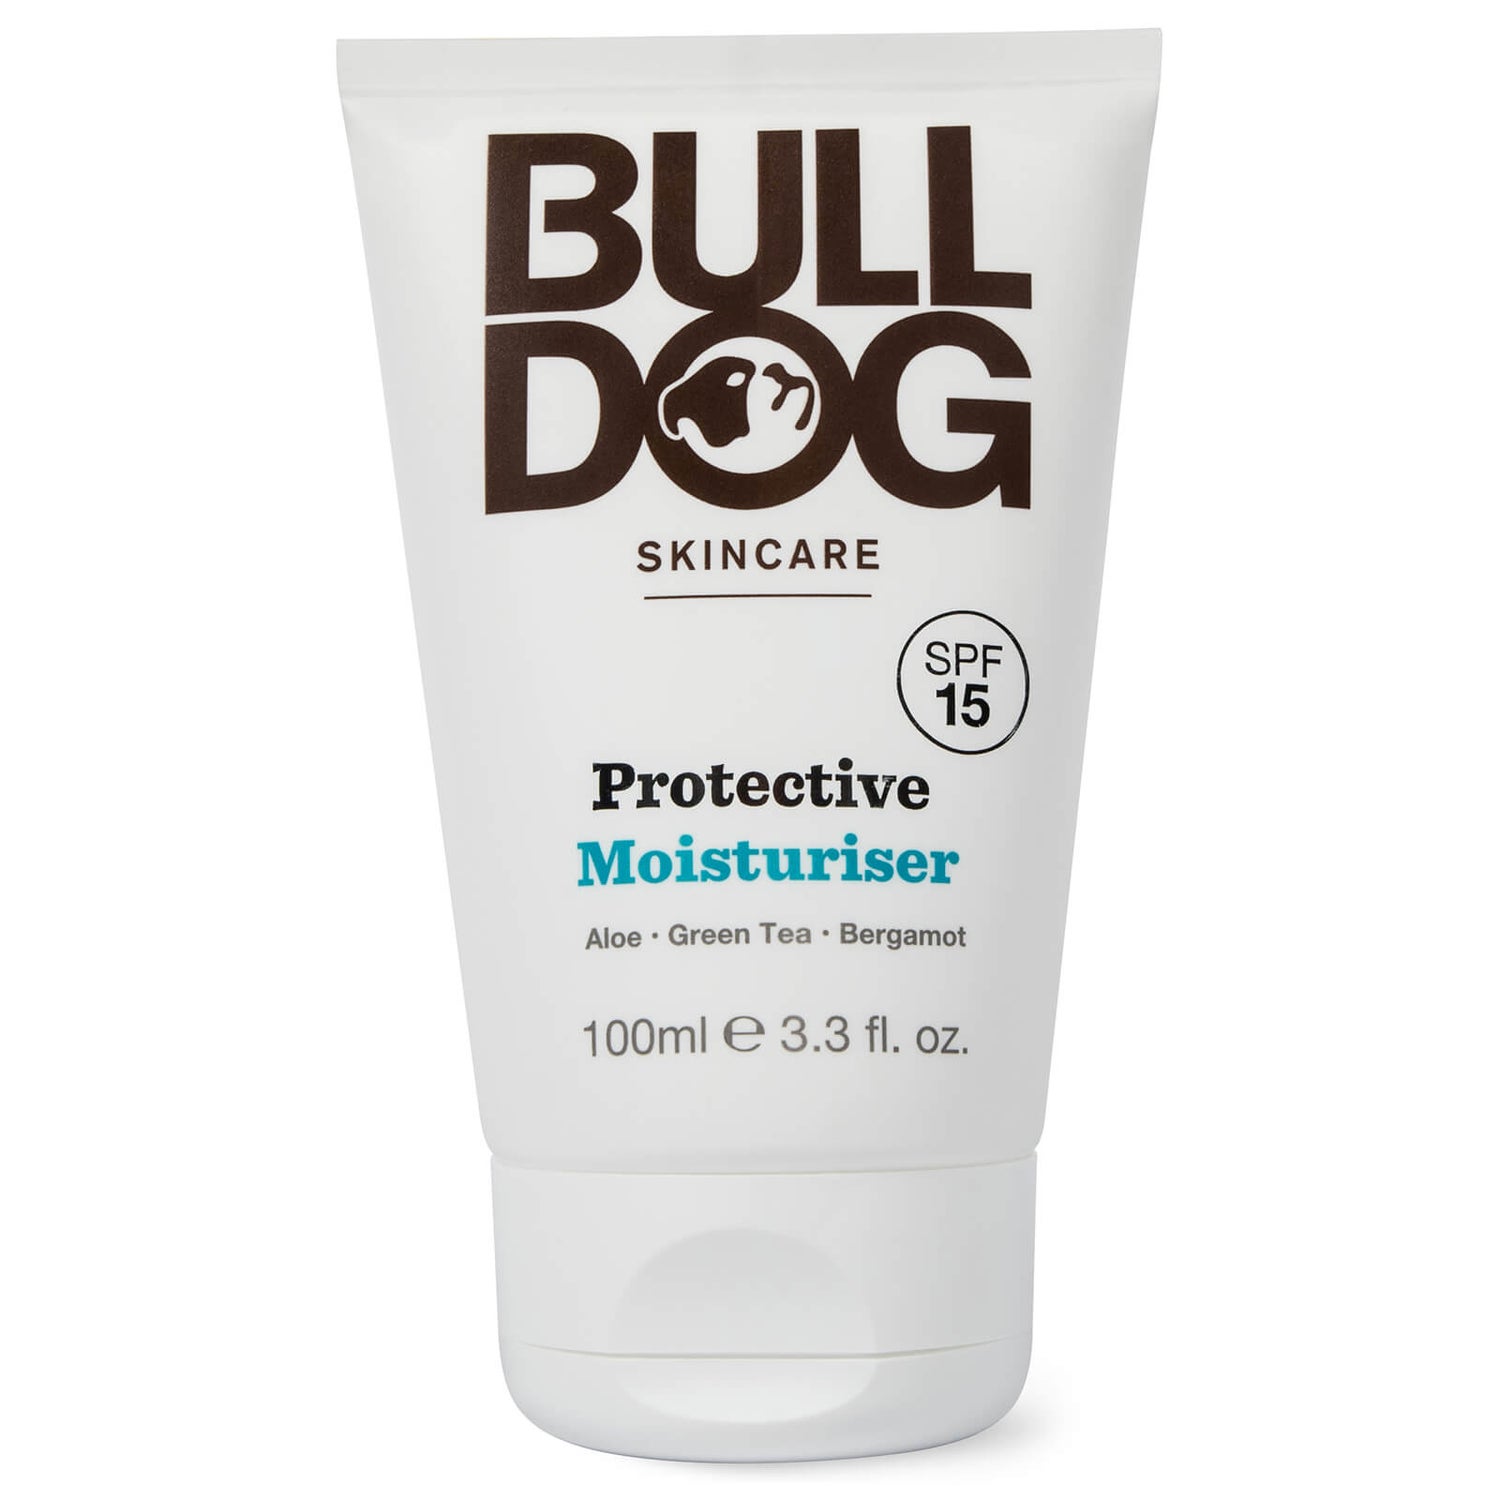 Creme Hidratante Protetor da Bulldog 100 ml